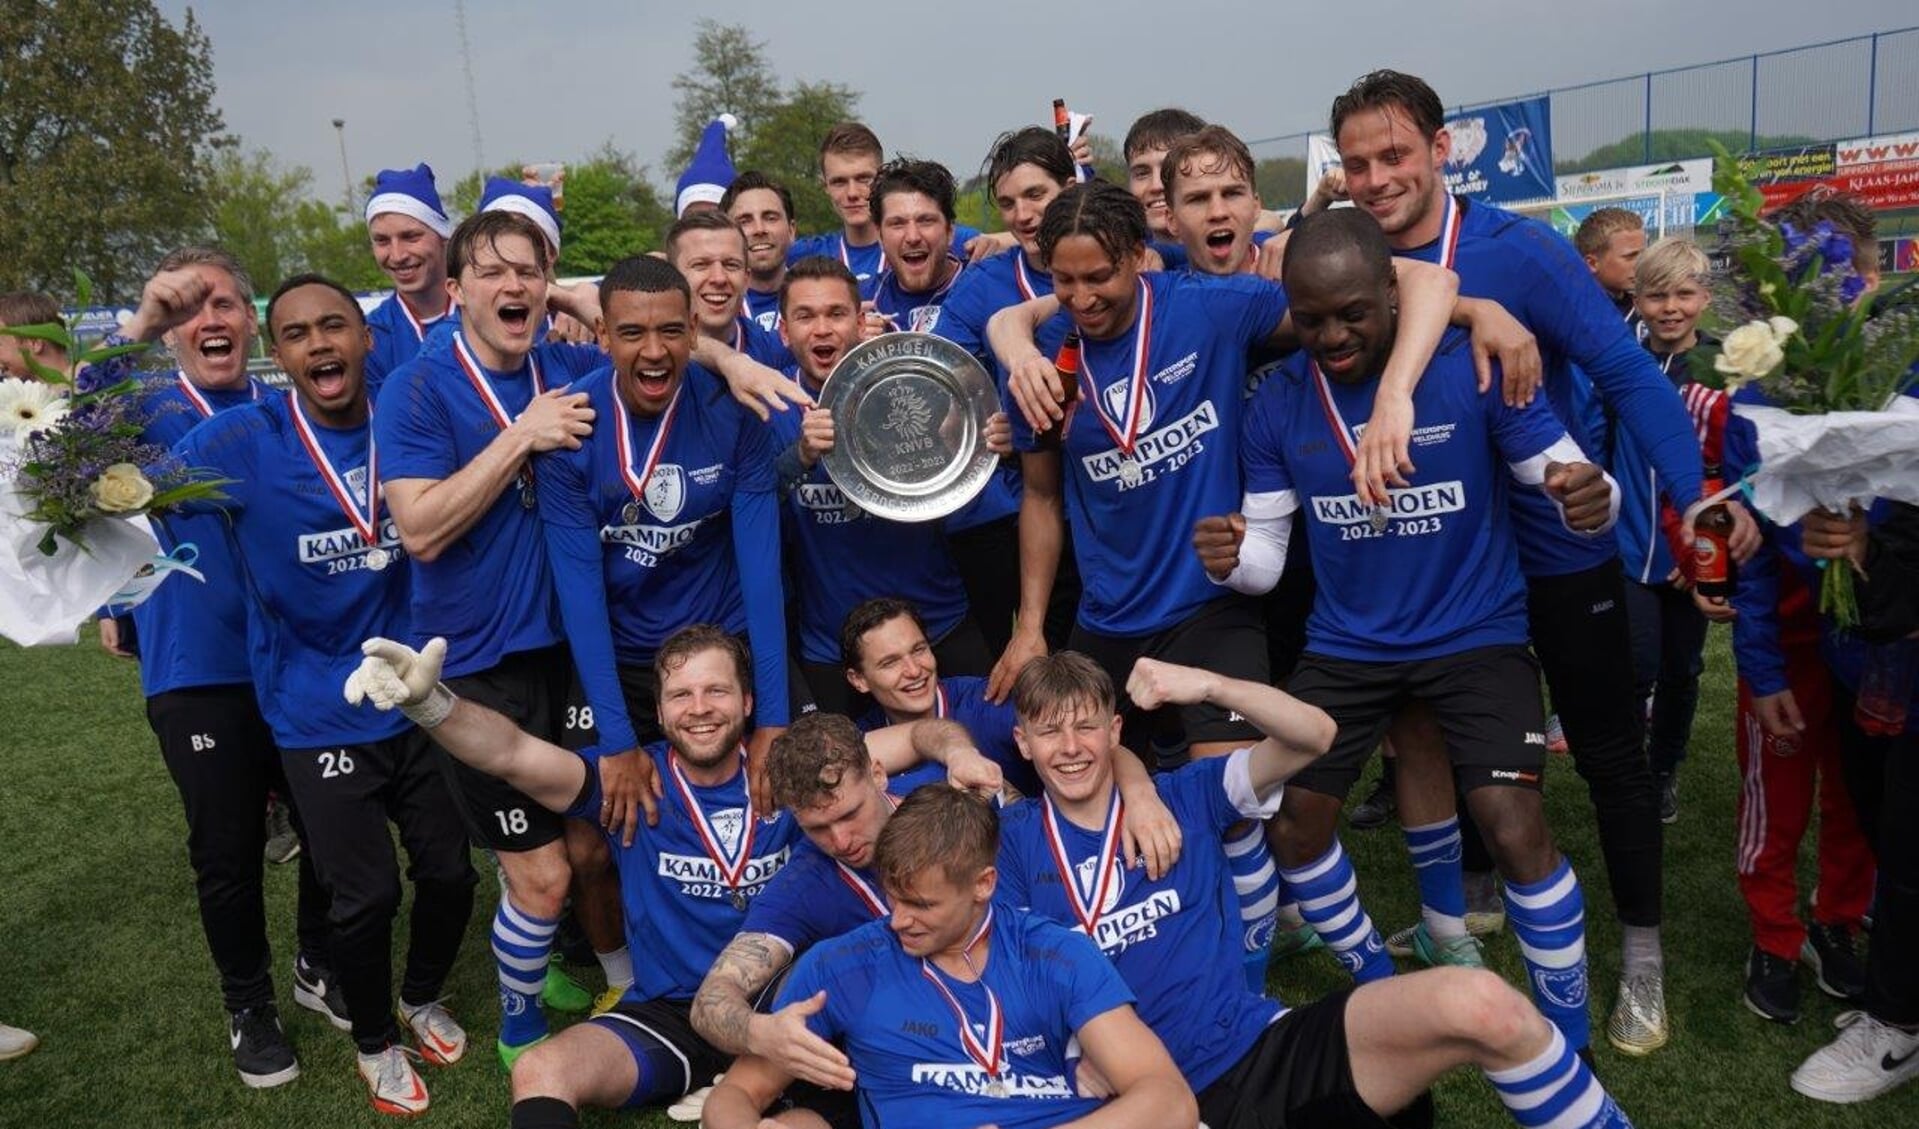 ADO'20 is kampioen van de zondag Derde Divisie en promoveert naar de Tweede Divisie, de hoogste afdeling van het amateurvoetbal in Nederland.